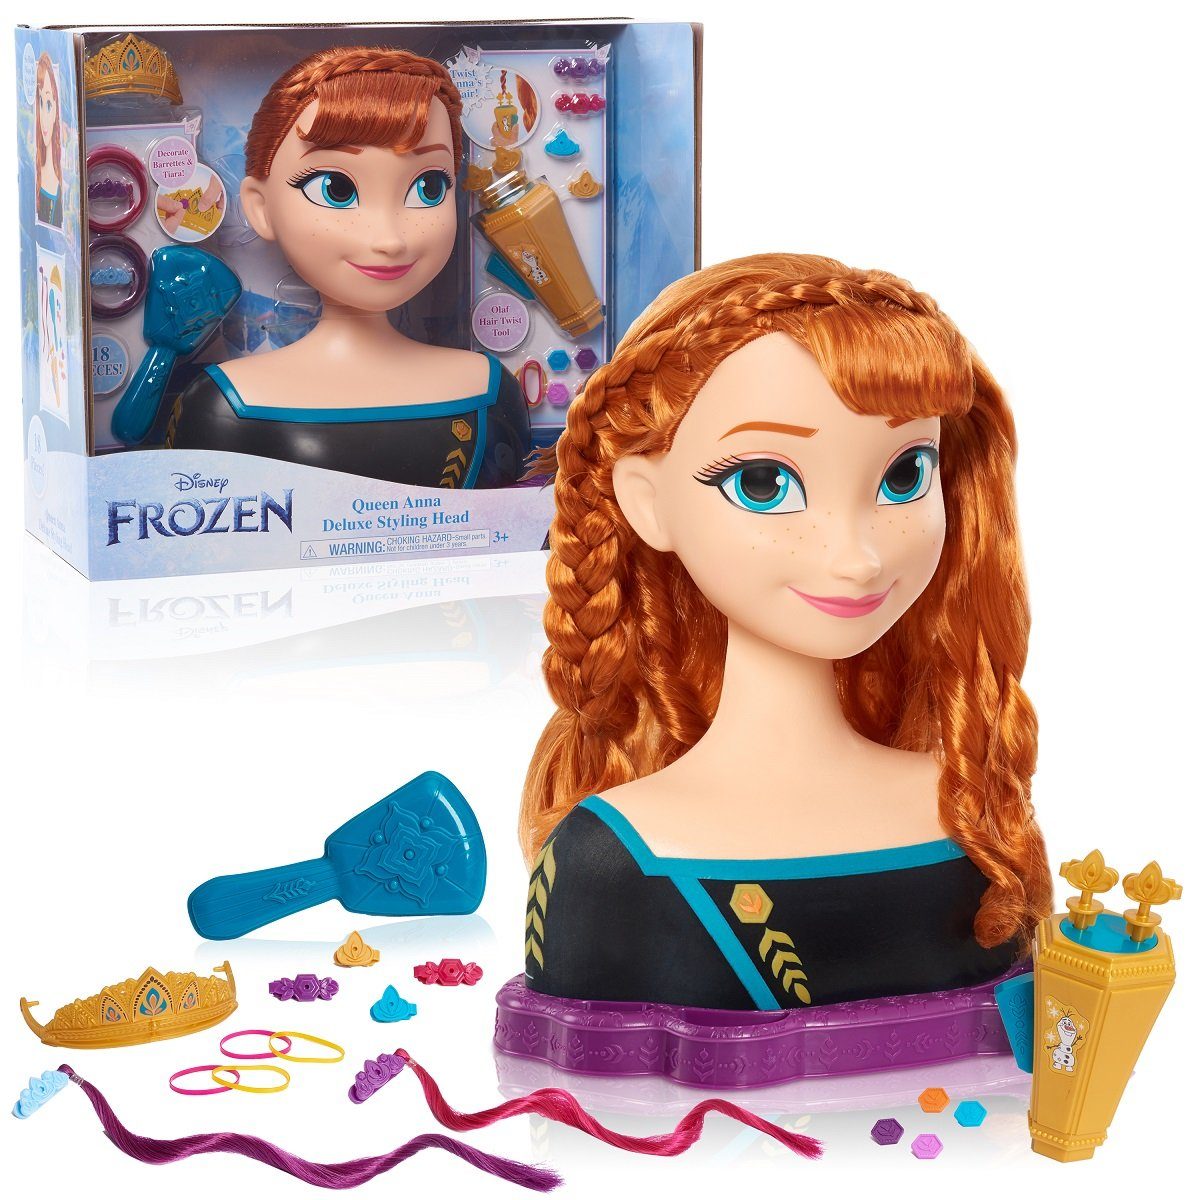 JustPlay Frisierkopf Disney Frozen 2 Queen Anna Deluxe Styling Head